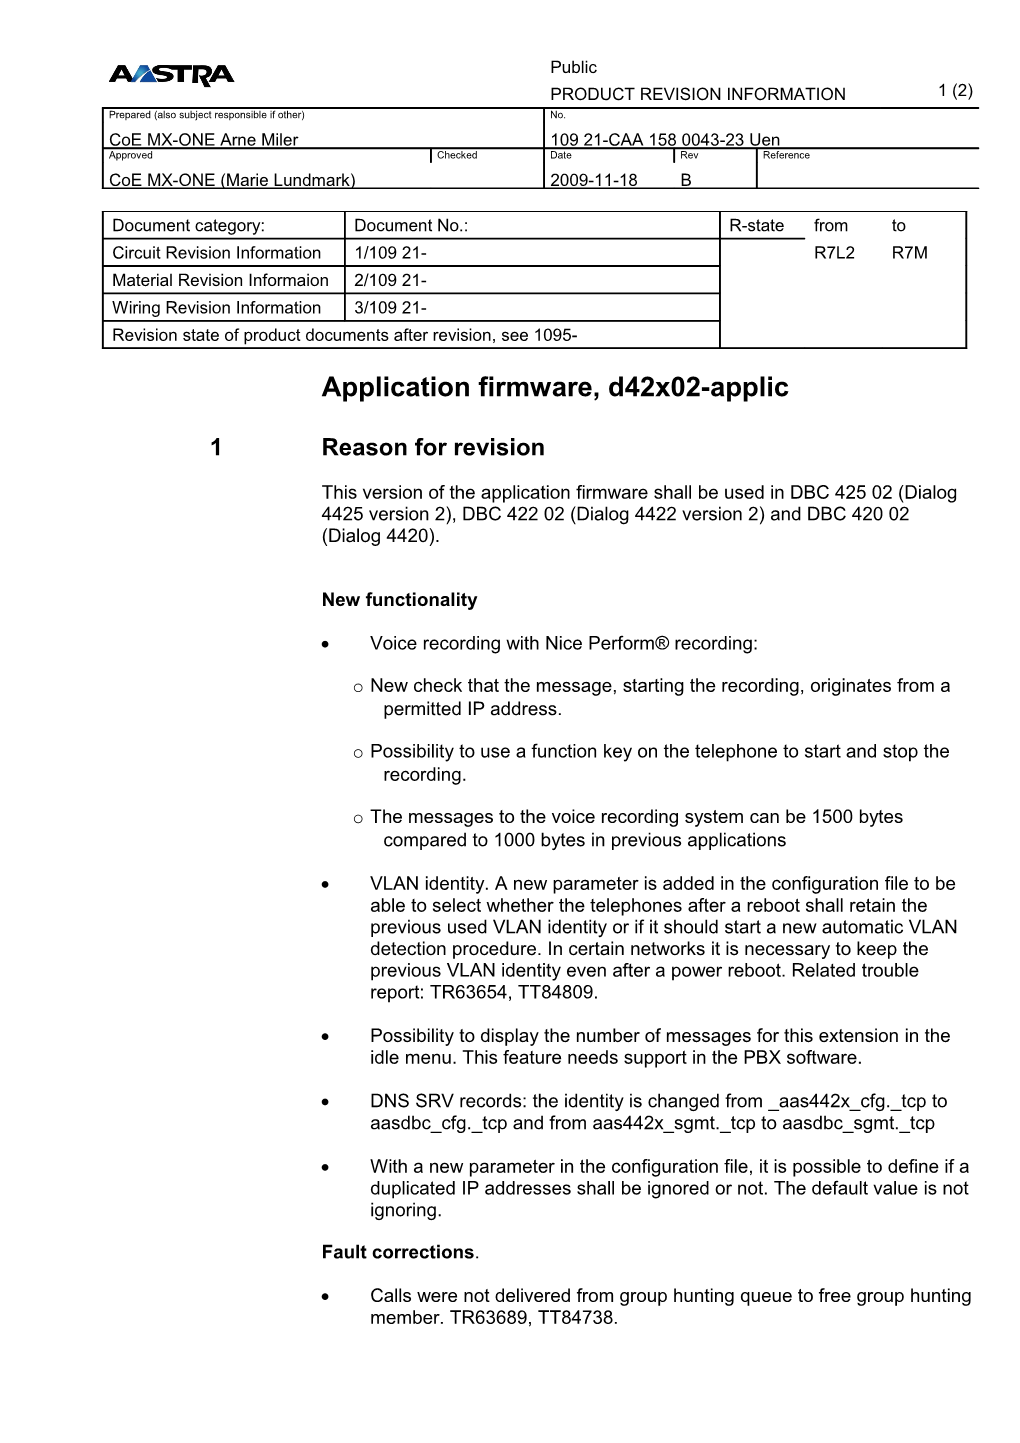 Application Firmware, D42x02-Applic